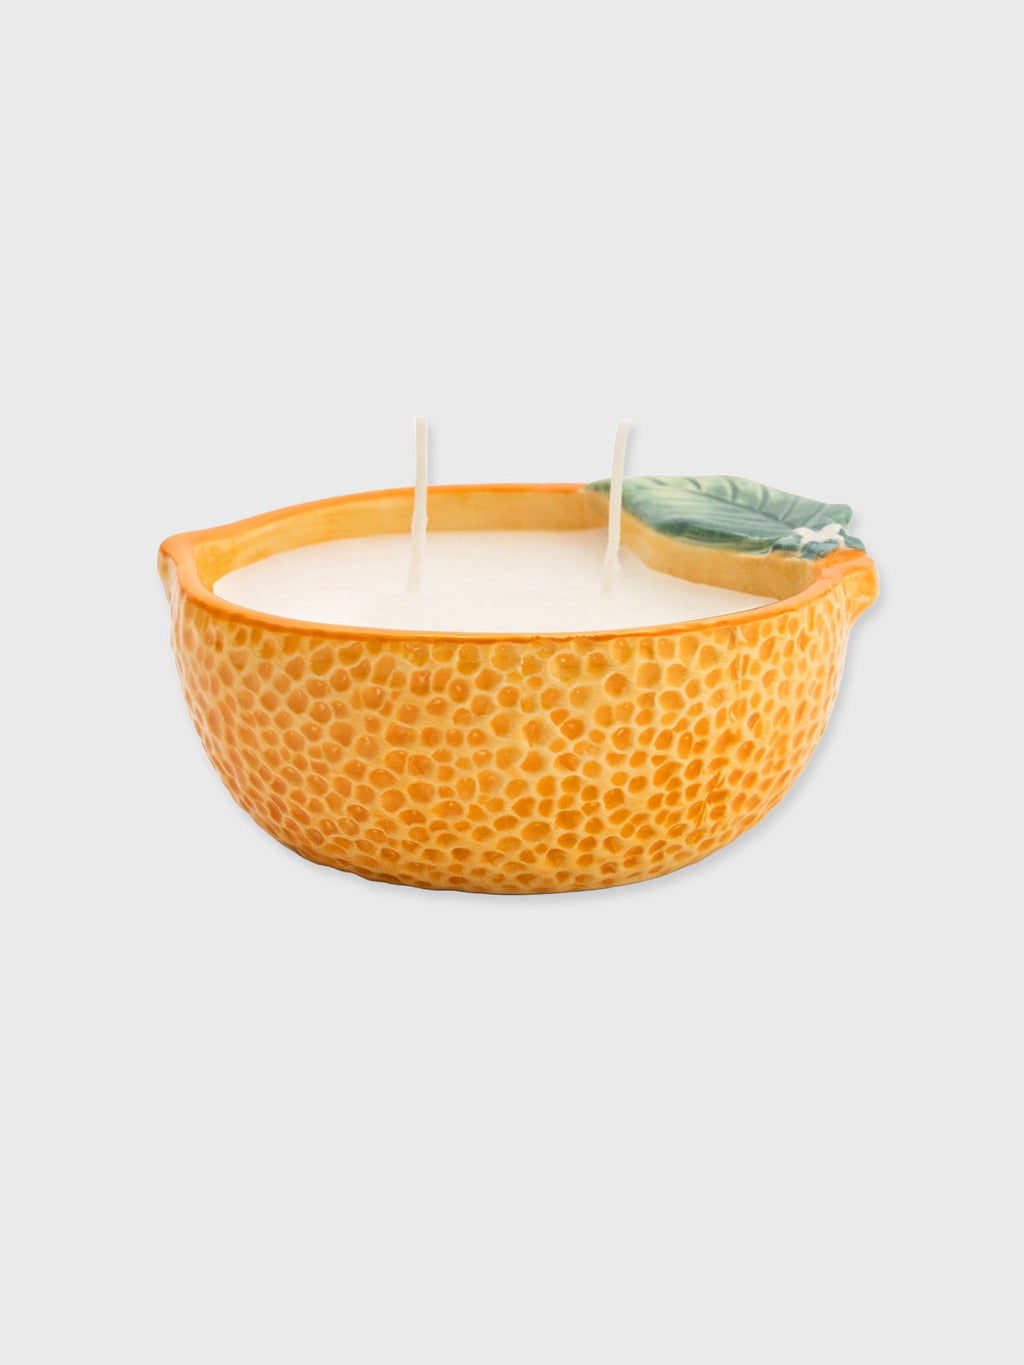 Orange Candle in ceramic pot